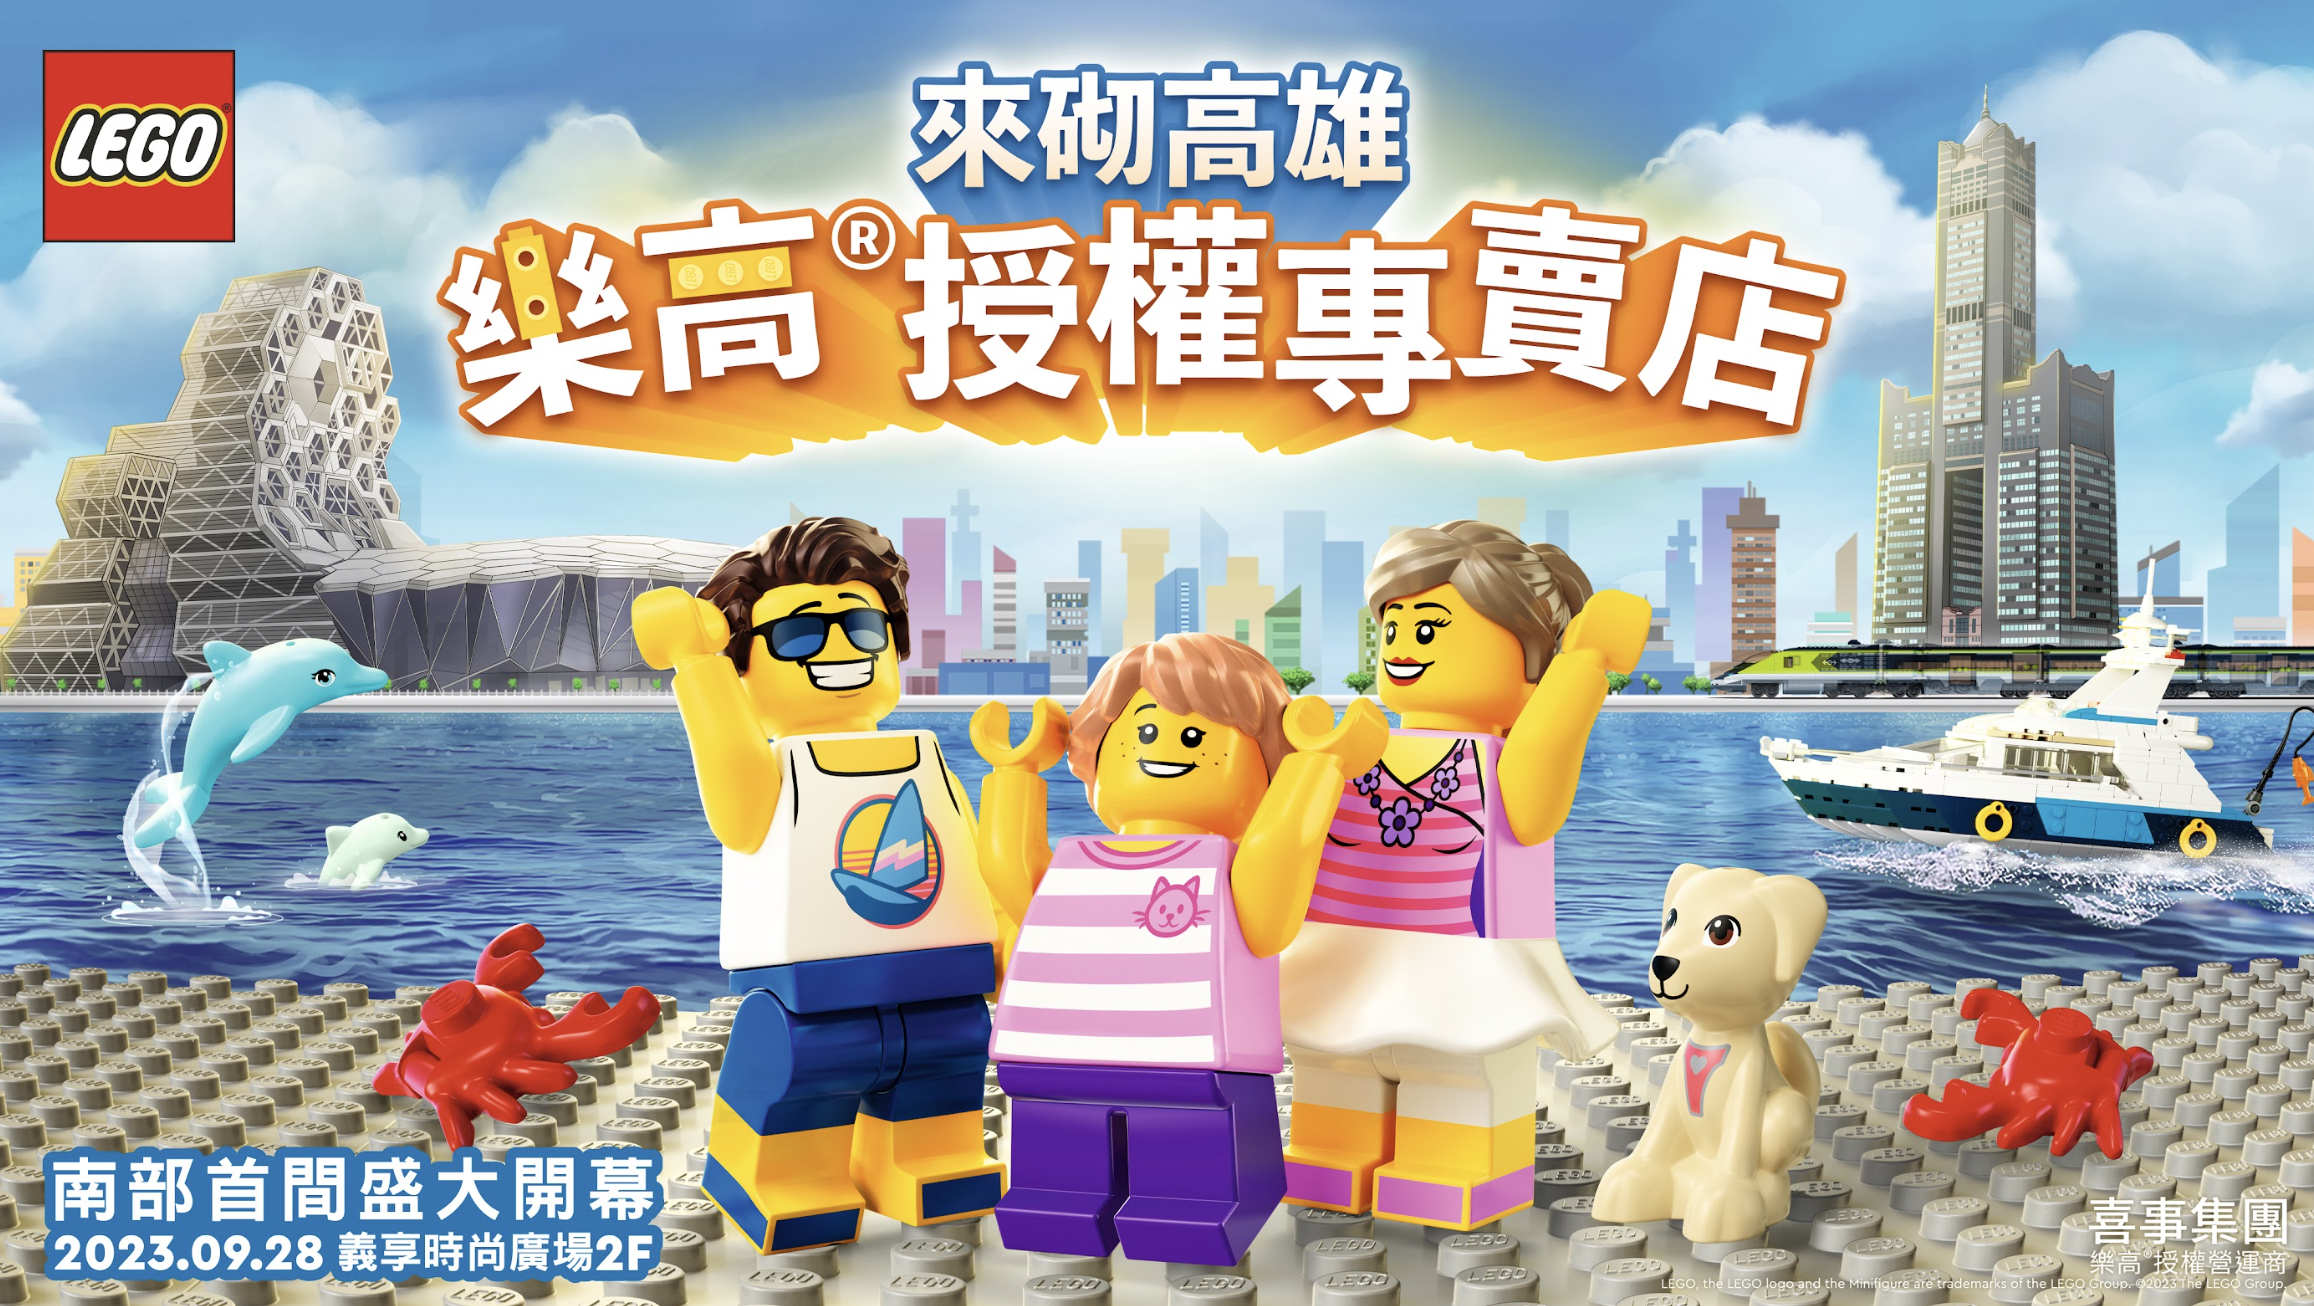 台灣首座「樂高迷你人偶工廠」將在高雄開幕　民眾可客制人偶外貌、姓名